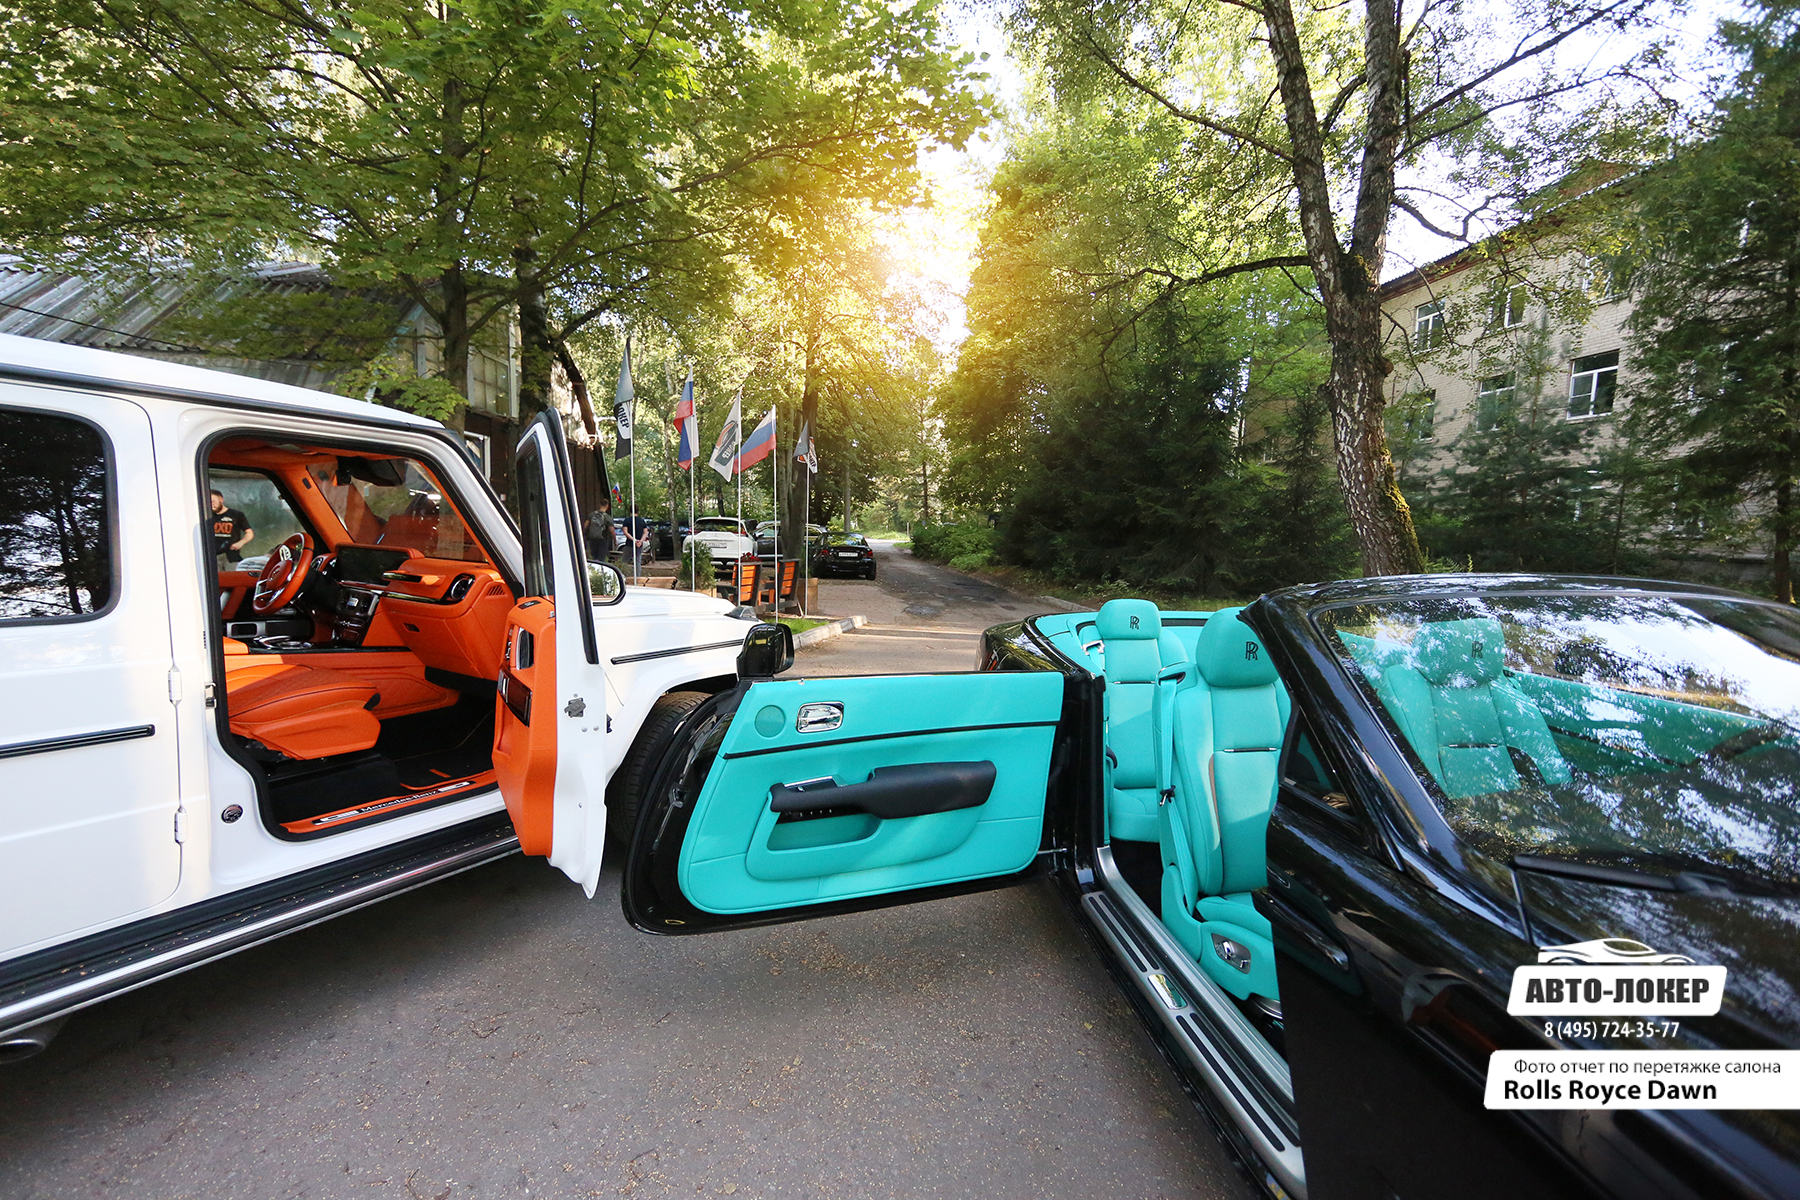 Перетяжка салонов автомобилей натуральной кожей Rolls Royce Dawn Тиффани и Mercedes Gelandewagen